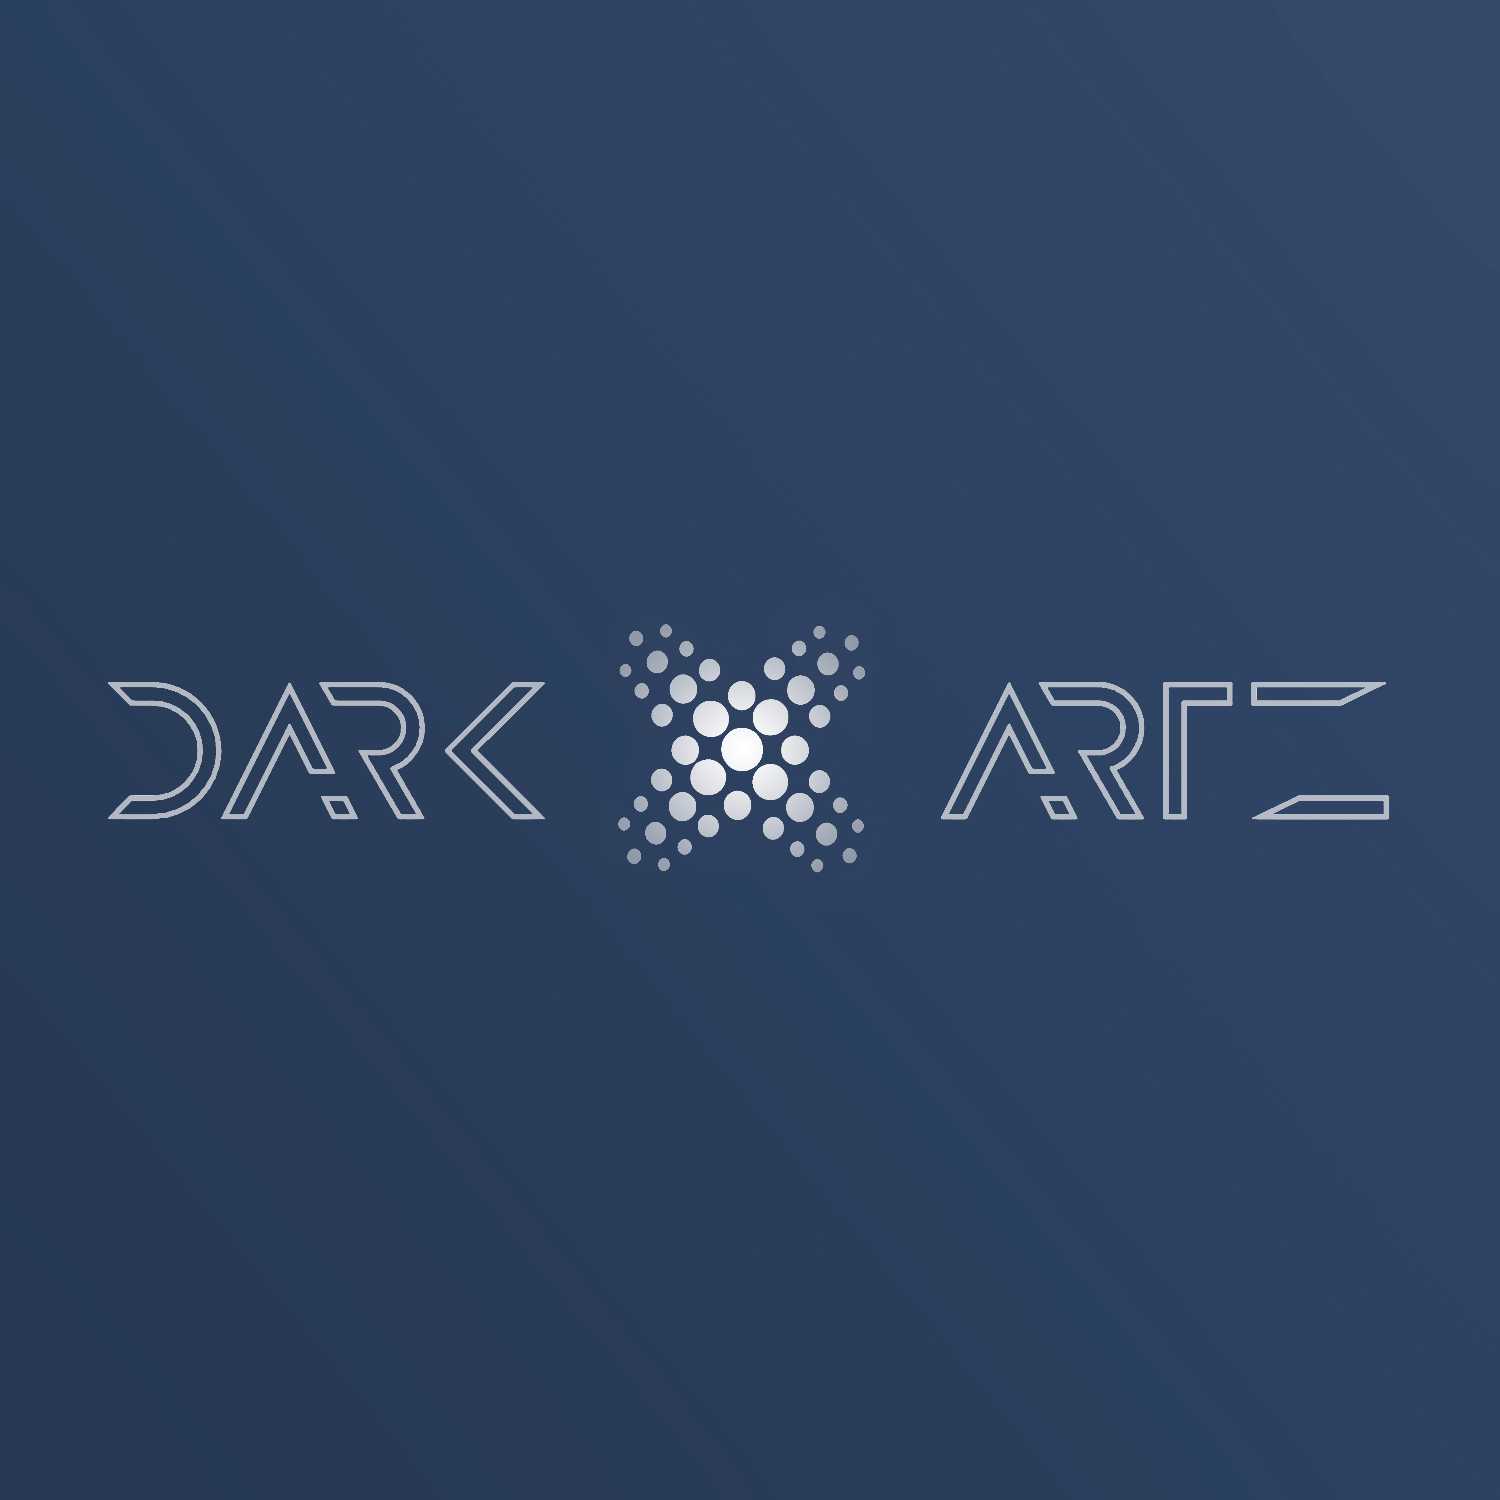 Dark Artz Studio - Market-in-sider